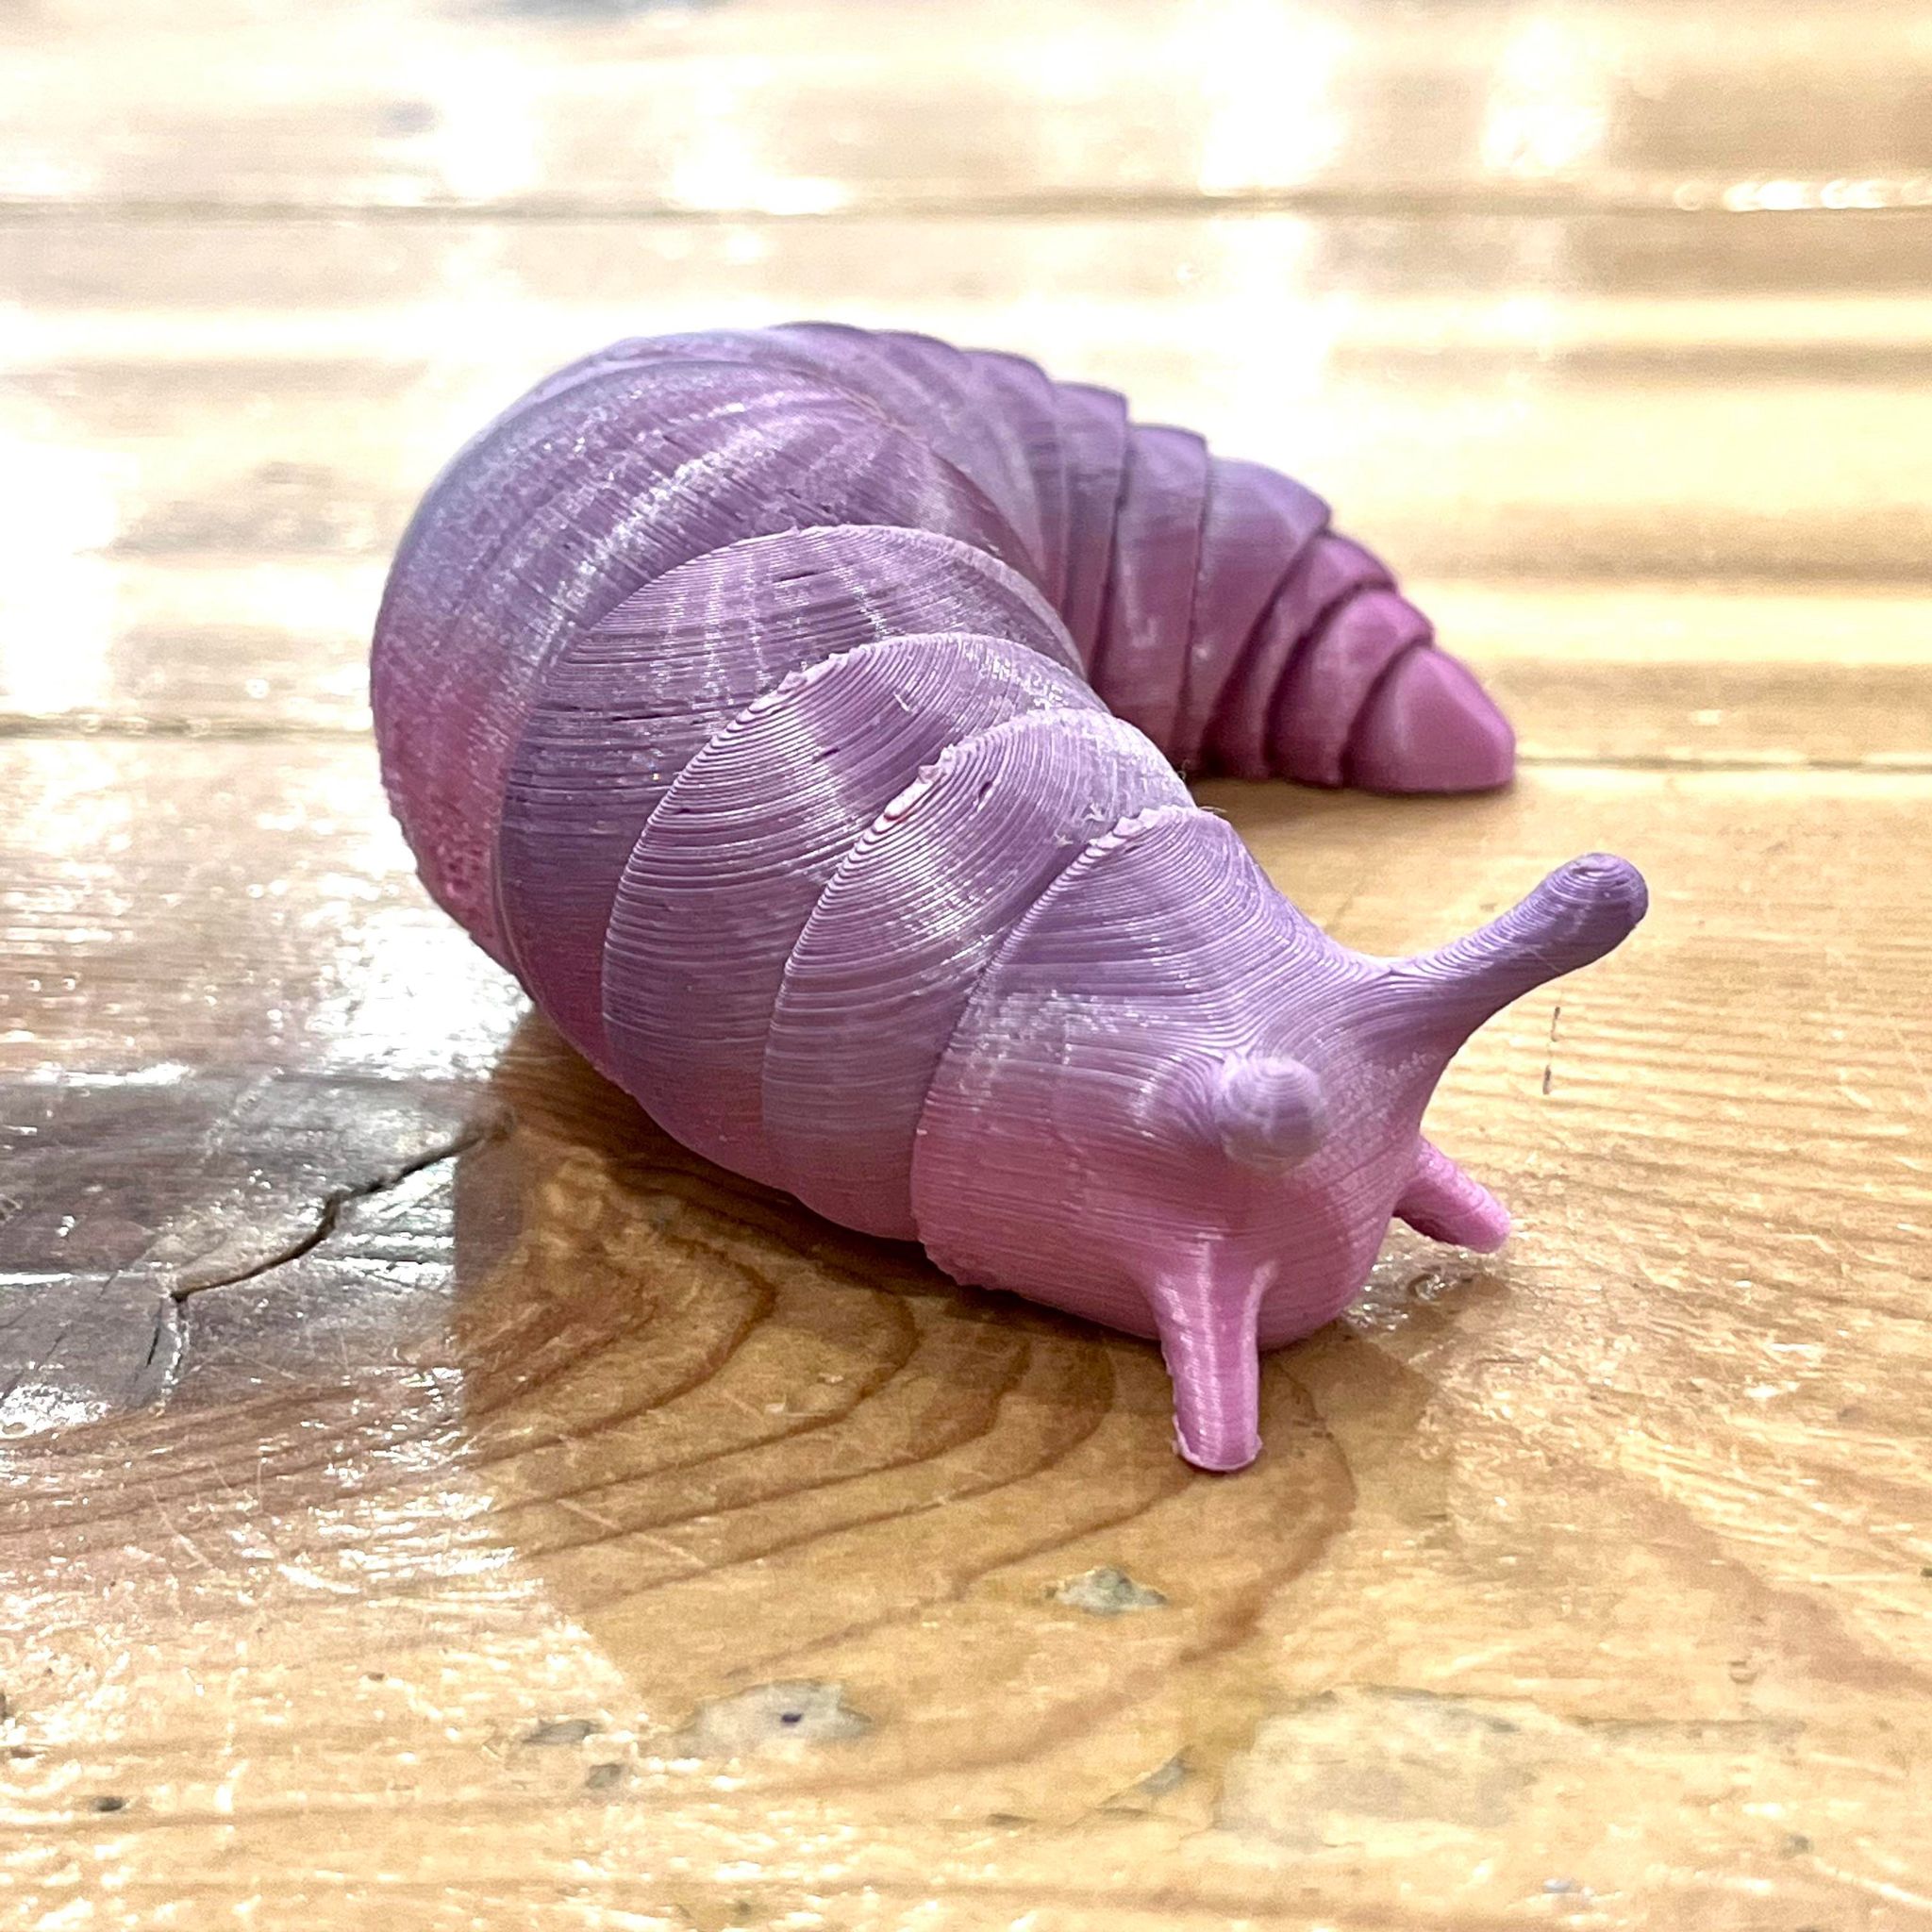 3D Printed Slug